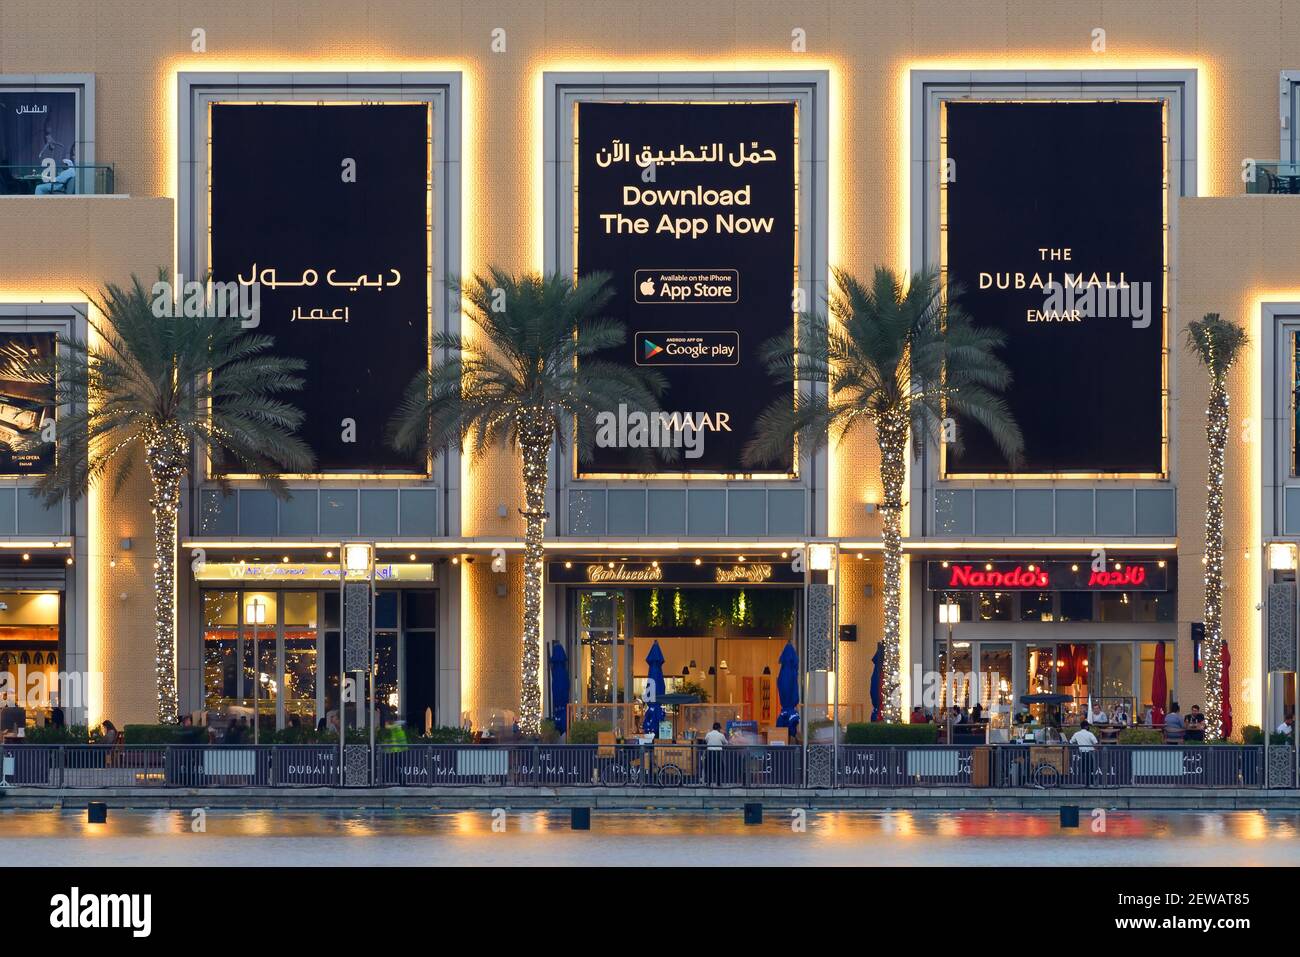 Die Dubai Mall Fassade, das größte Einkaufszentrum der Welt, befindet sich in Dubai, Vereinigte Arabische Emirate. Außenansicht des Emaar Luxusimmobilien. Stockfoto